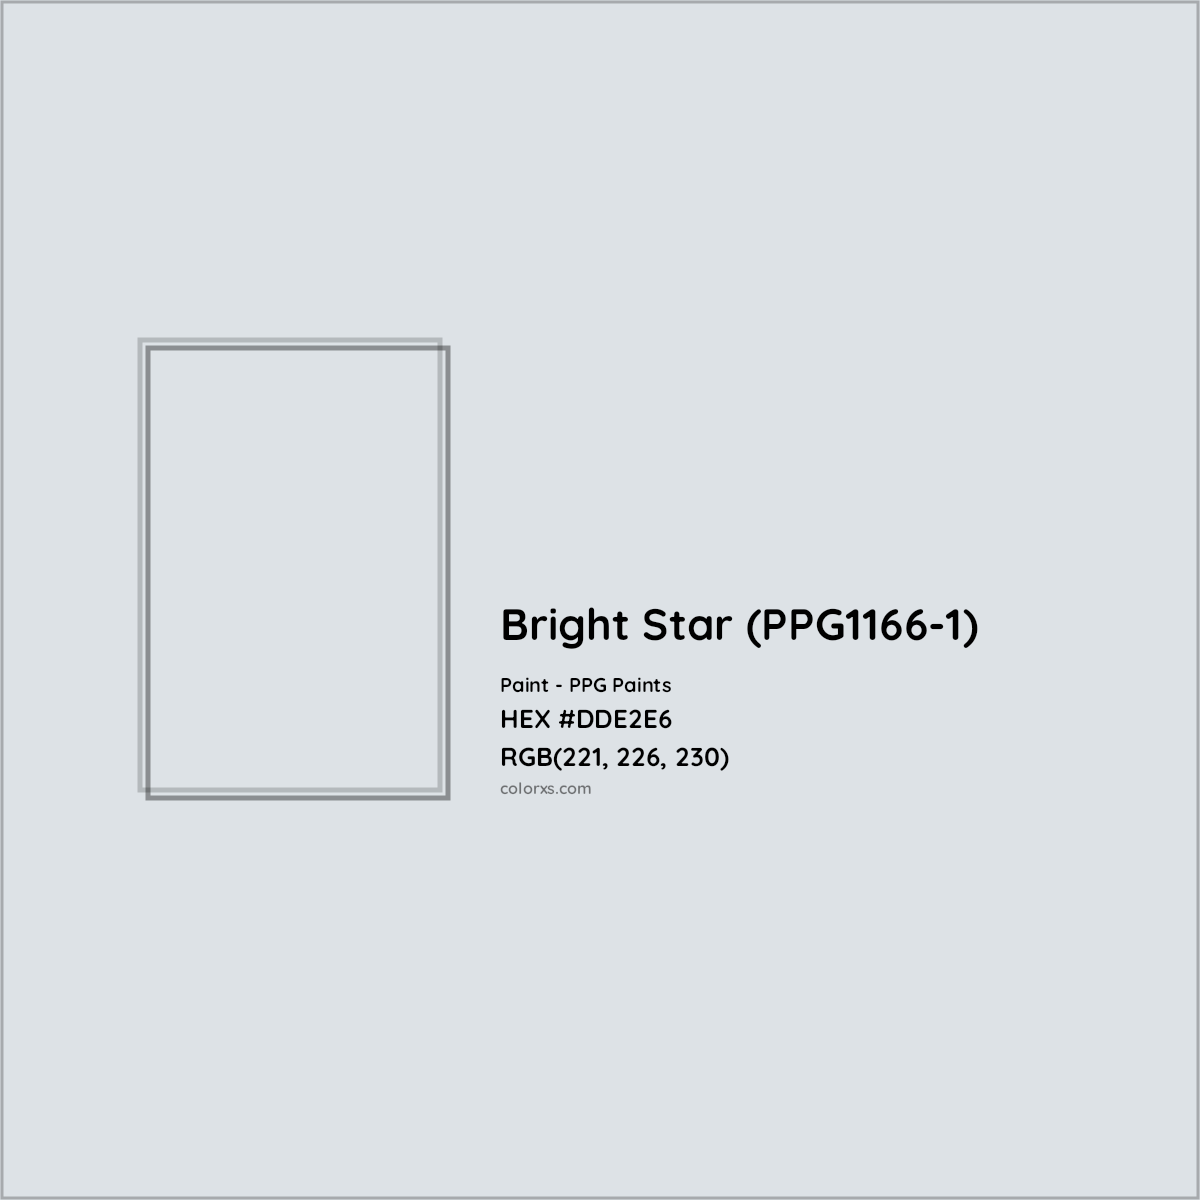 HEX #DDE2E6 Bright Star (PPG1166-1) Paint PPG Paints - Color Code